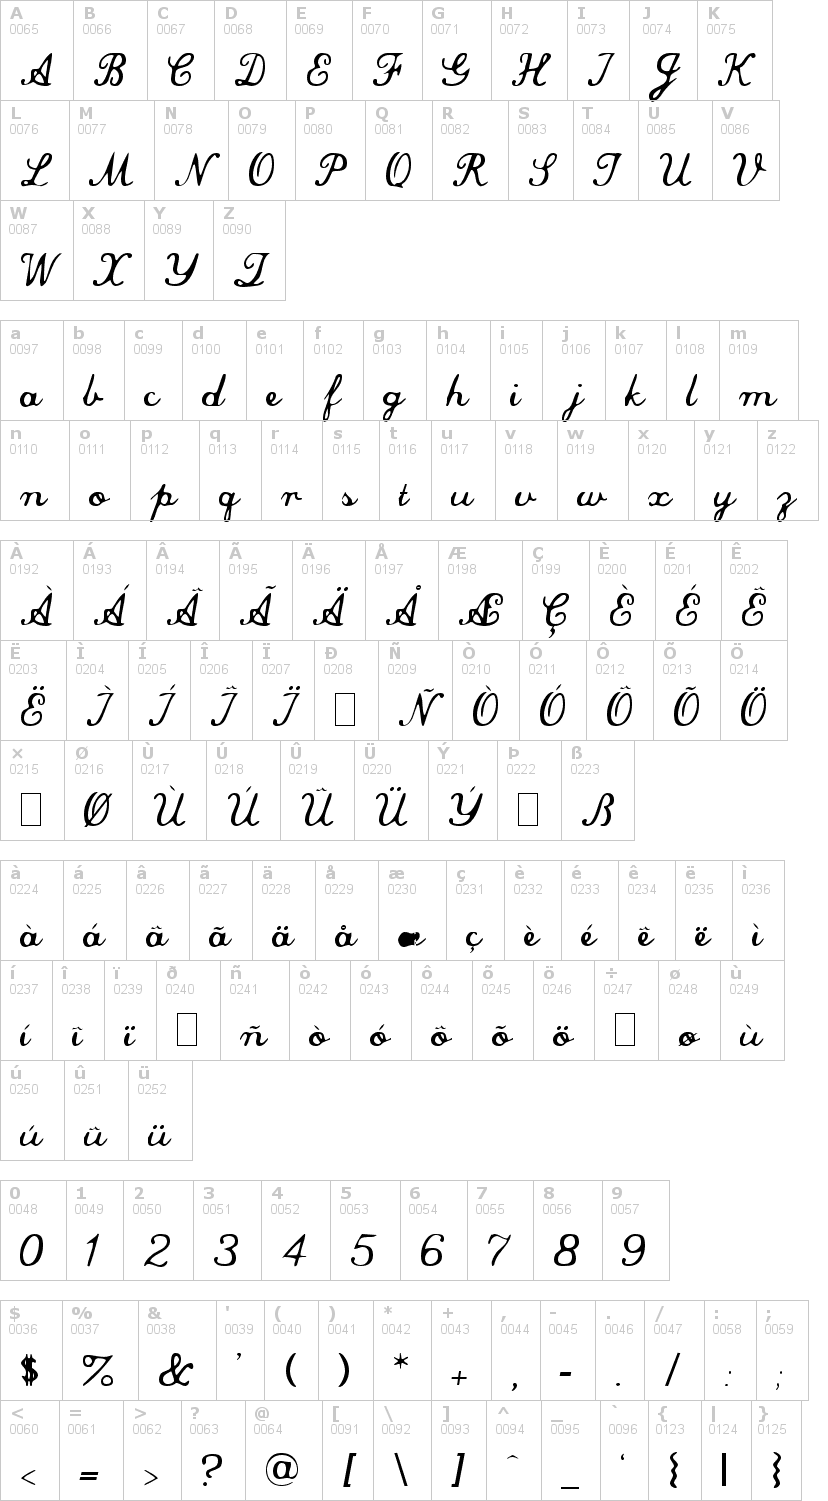 Lettere dell'alfabeto del font commercial-script con le quali è possibile realizzare adesivi prespaziati